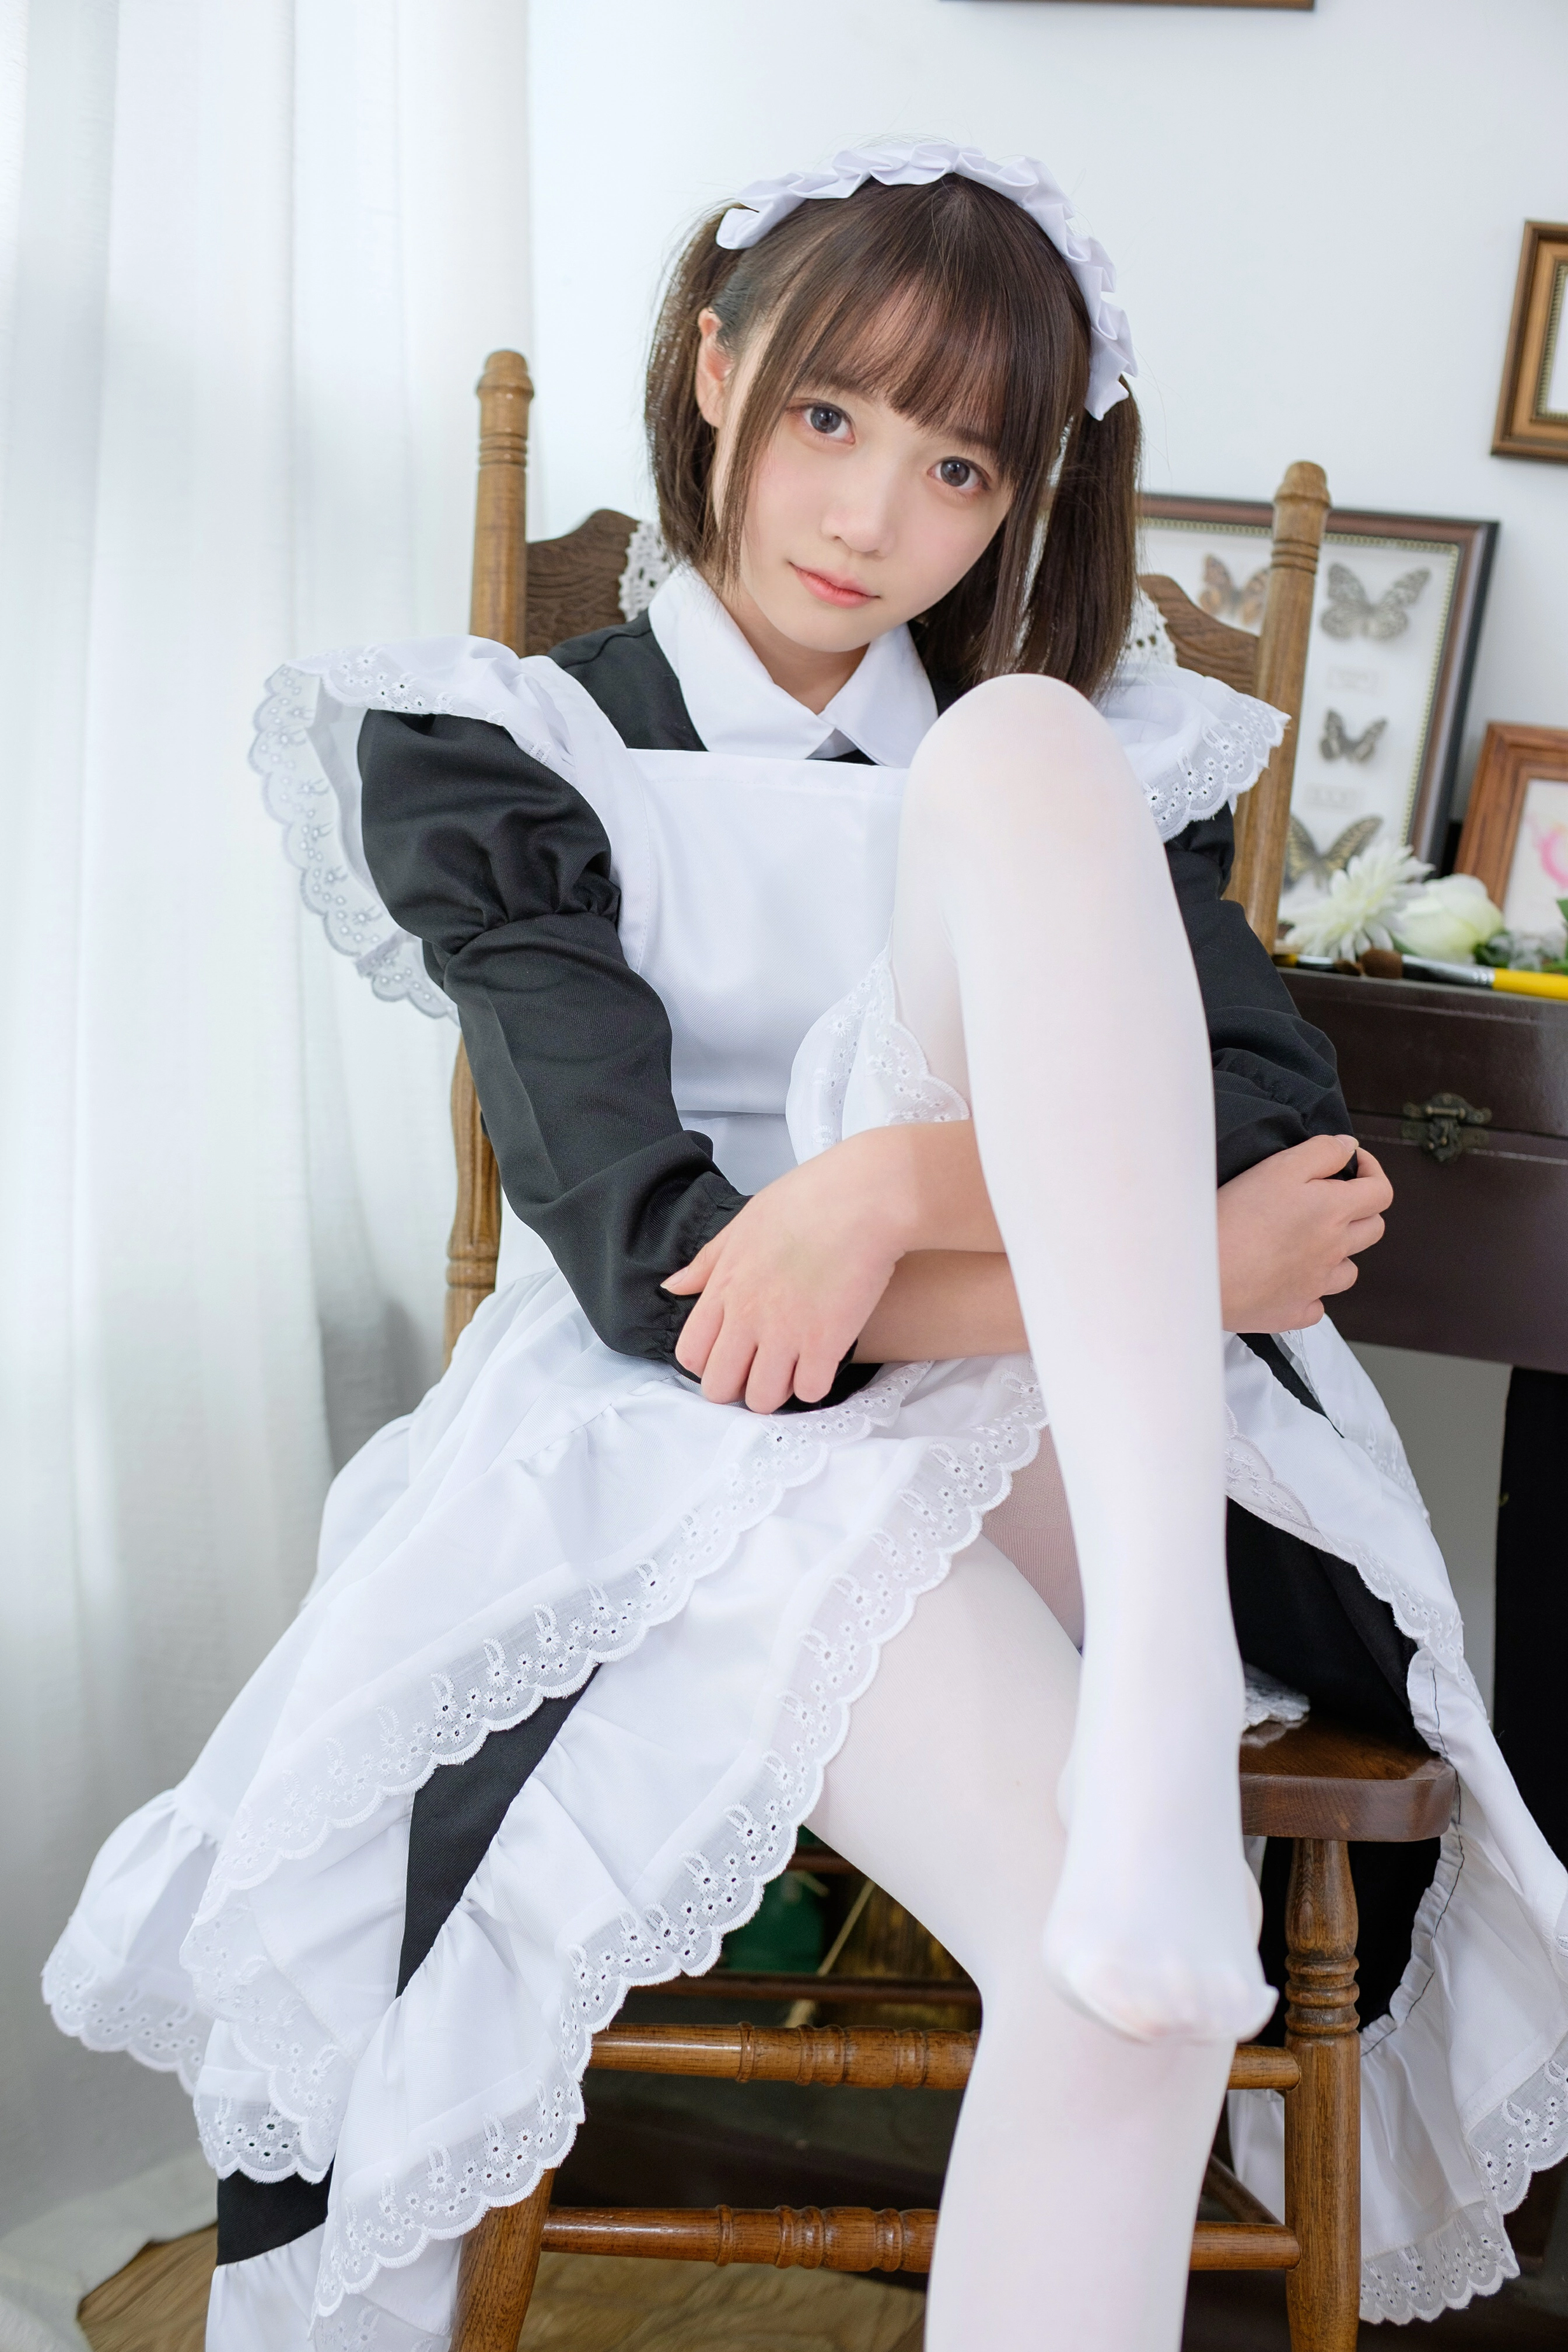 [森萝财团]SSR-005 可爱的女仆 清纯小萝莉 性感女仆制服加白色丝袜美腿玉足私房写真集,